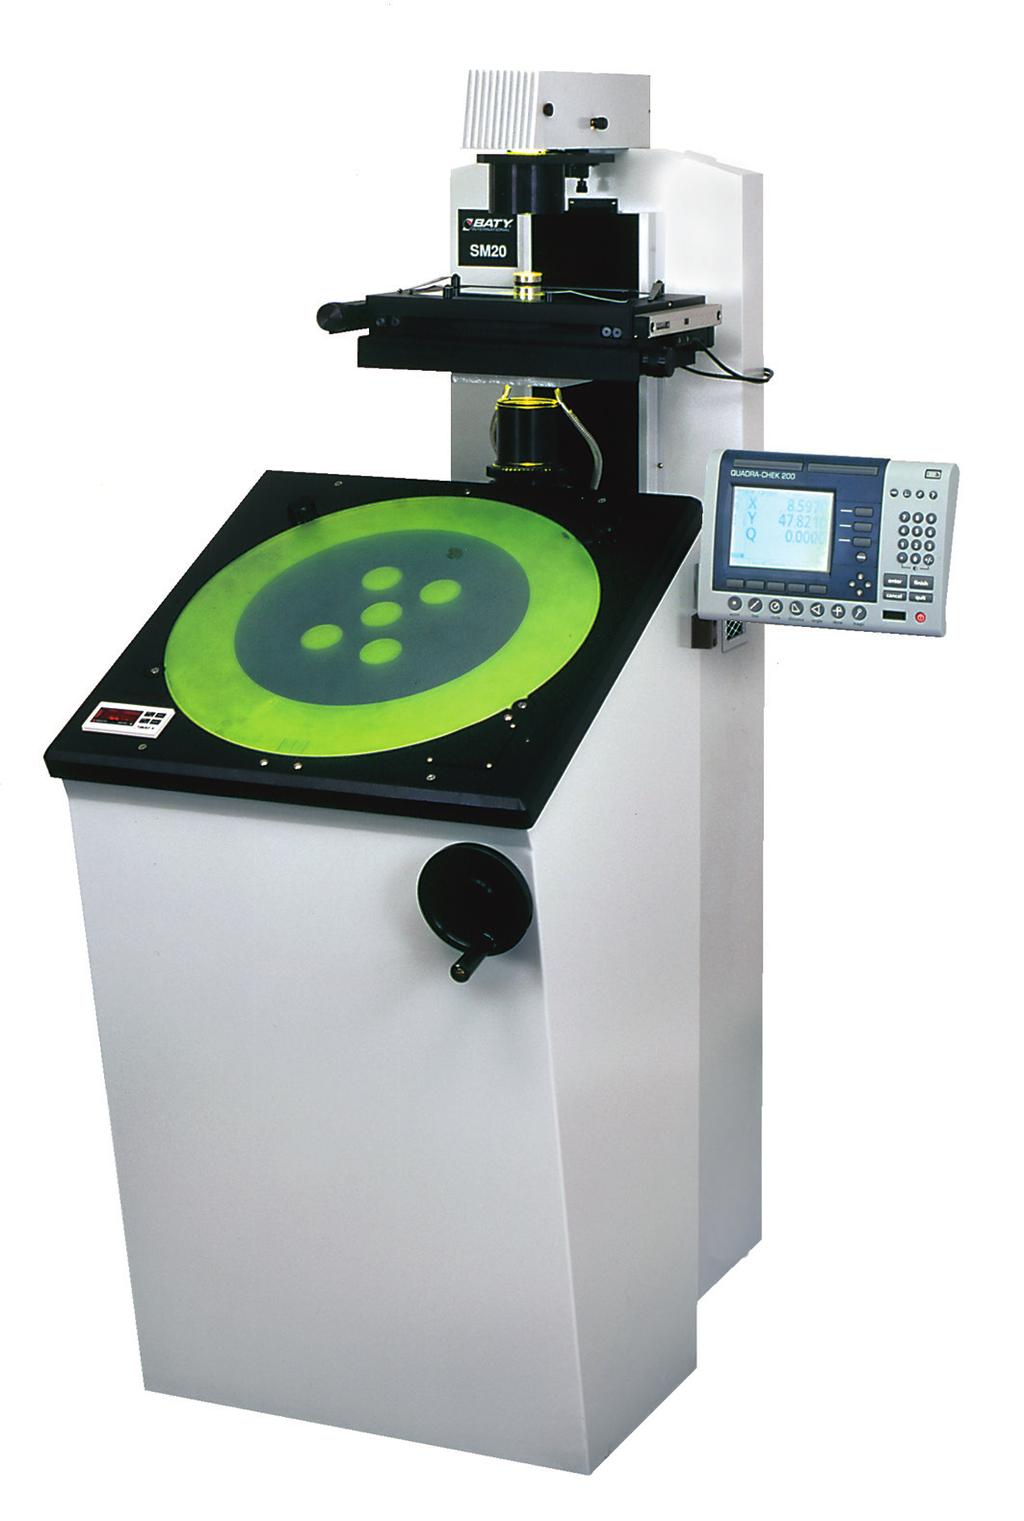 Profilprojektor SM20 Vyhodnocovací jednotky Vertikální projektor pro měření středně velkých dílů s matnicí o průměru 500 mm a měřicím rozsahem 250x125 mm.